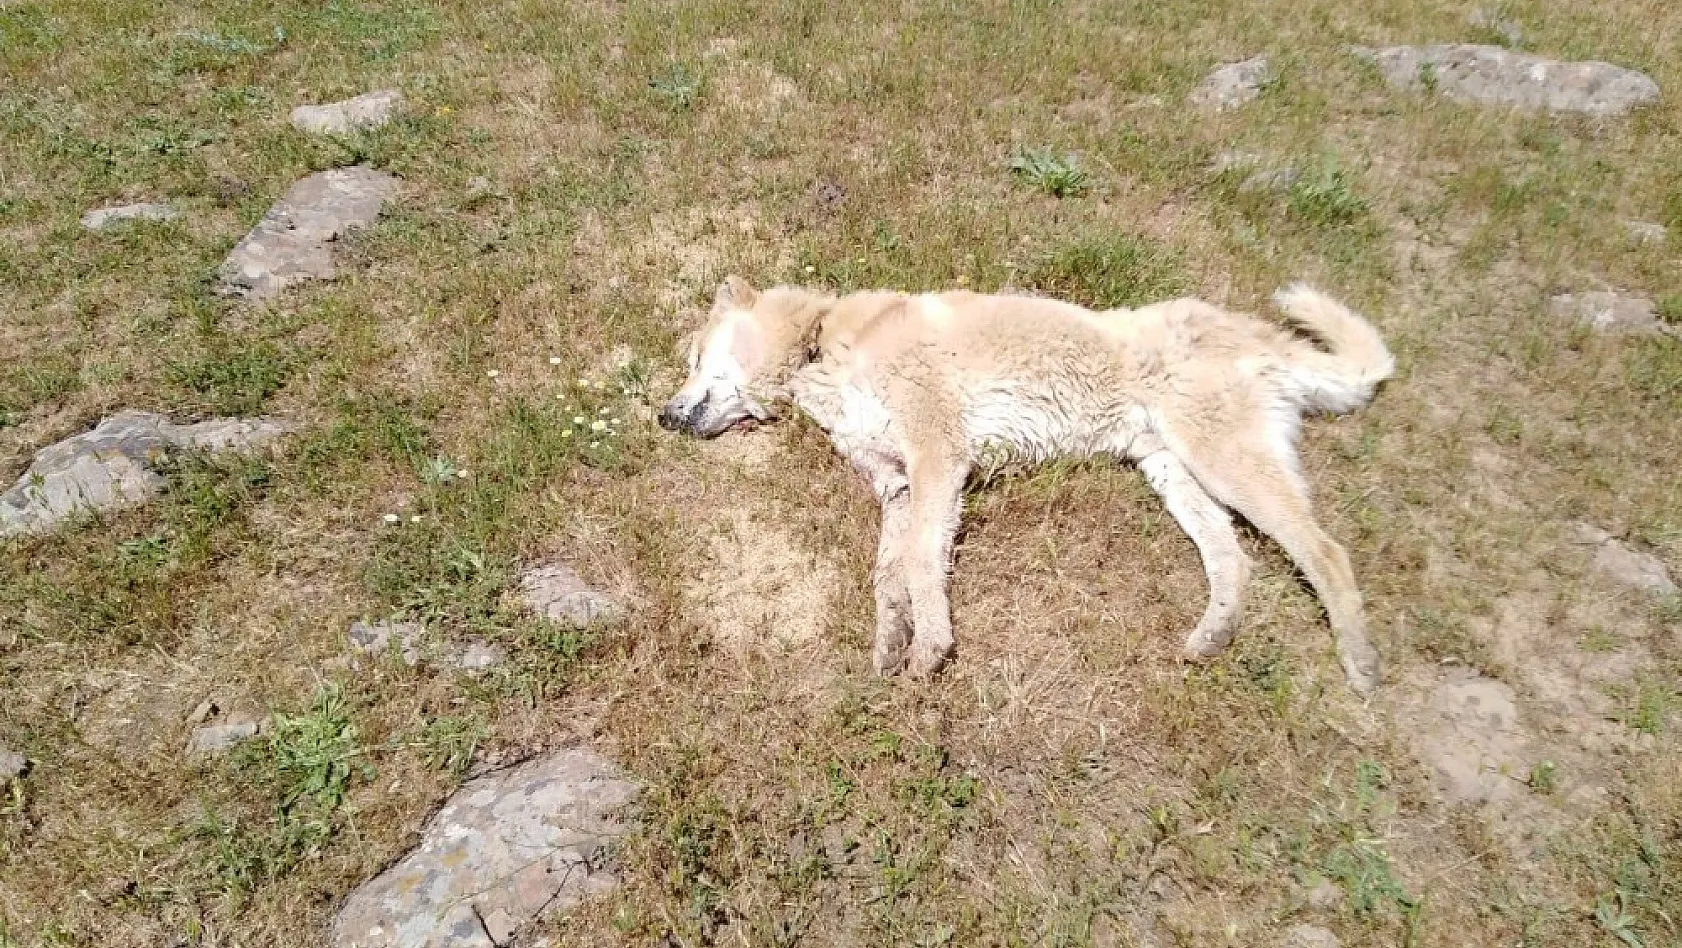 Bingöl'de 4 çoban köpeğinin vurulduğu iddiası 